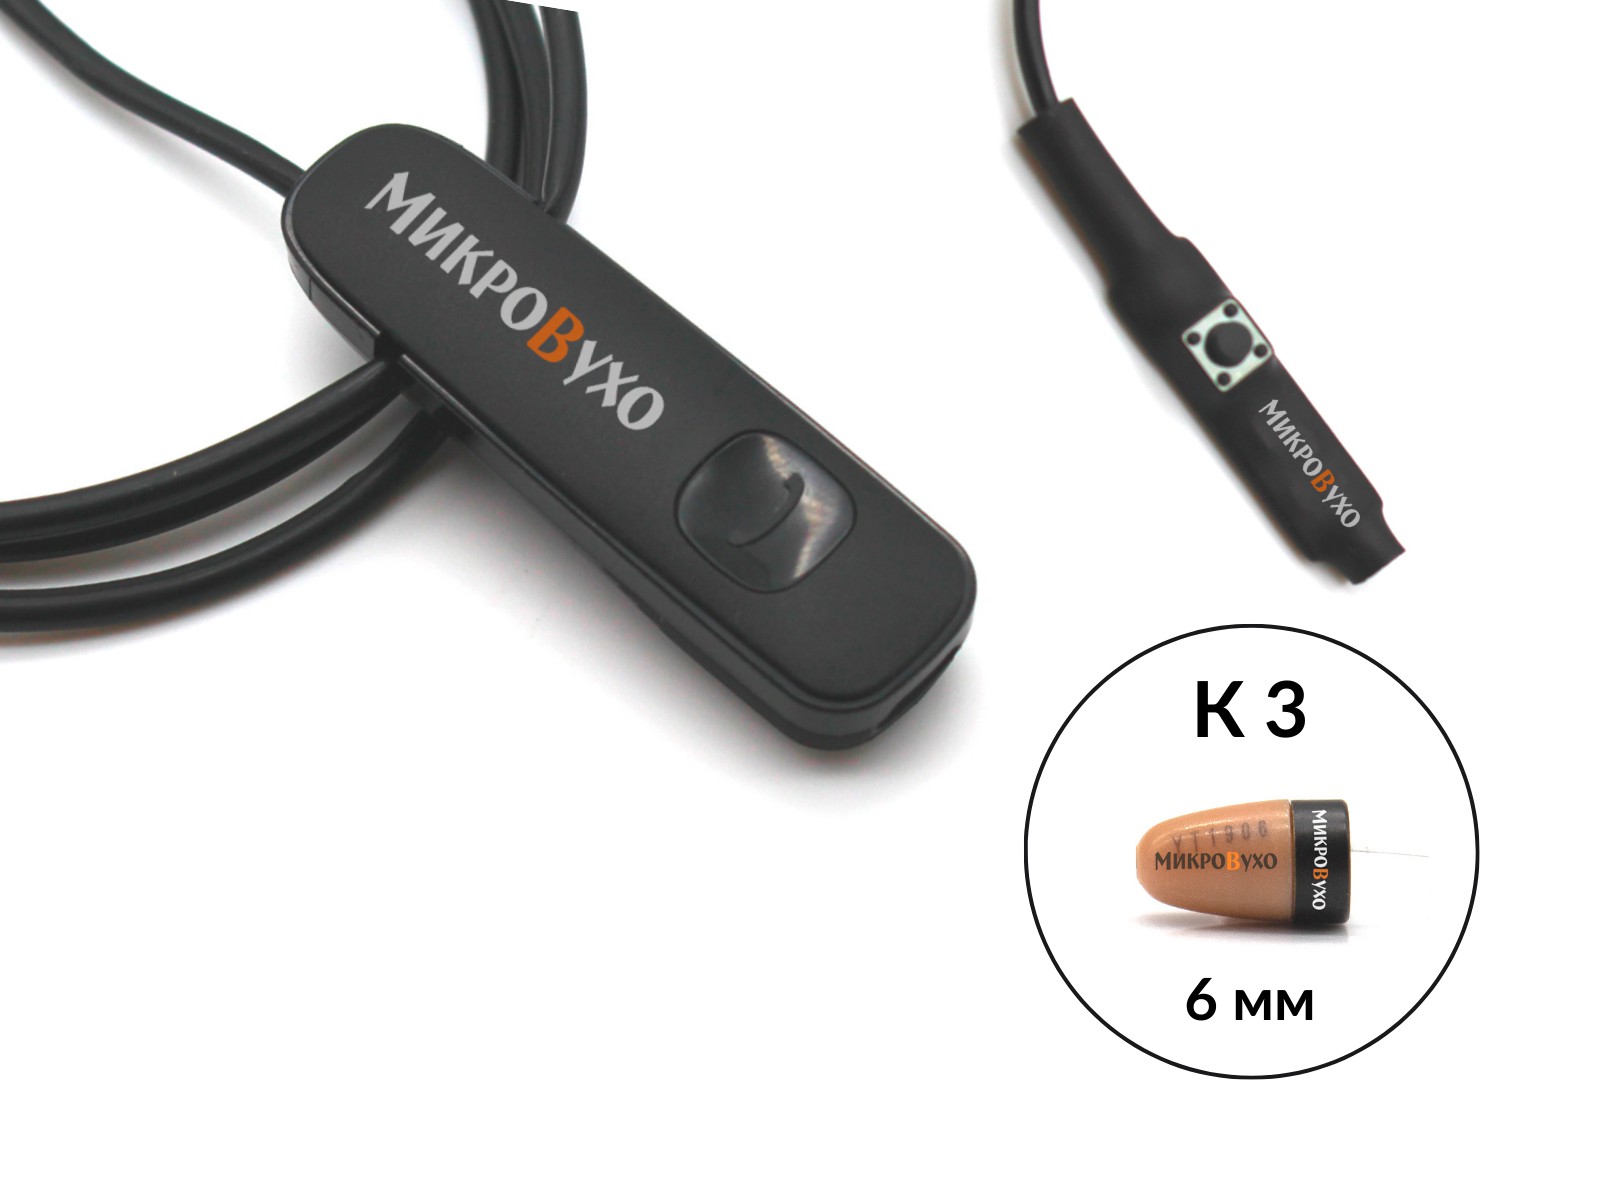 Гарнитура Bluetooth Plantronics с капсульным микронаушником K3 6 мм - изображение 2